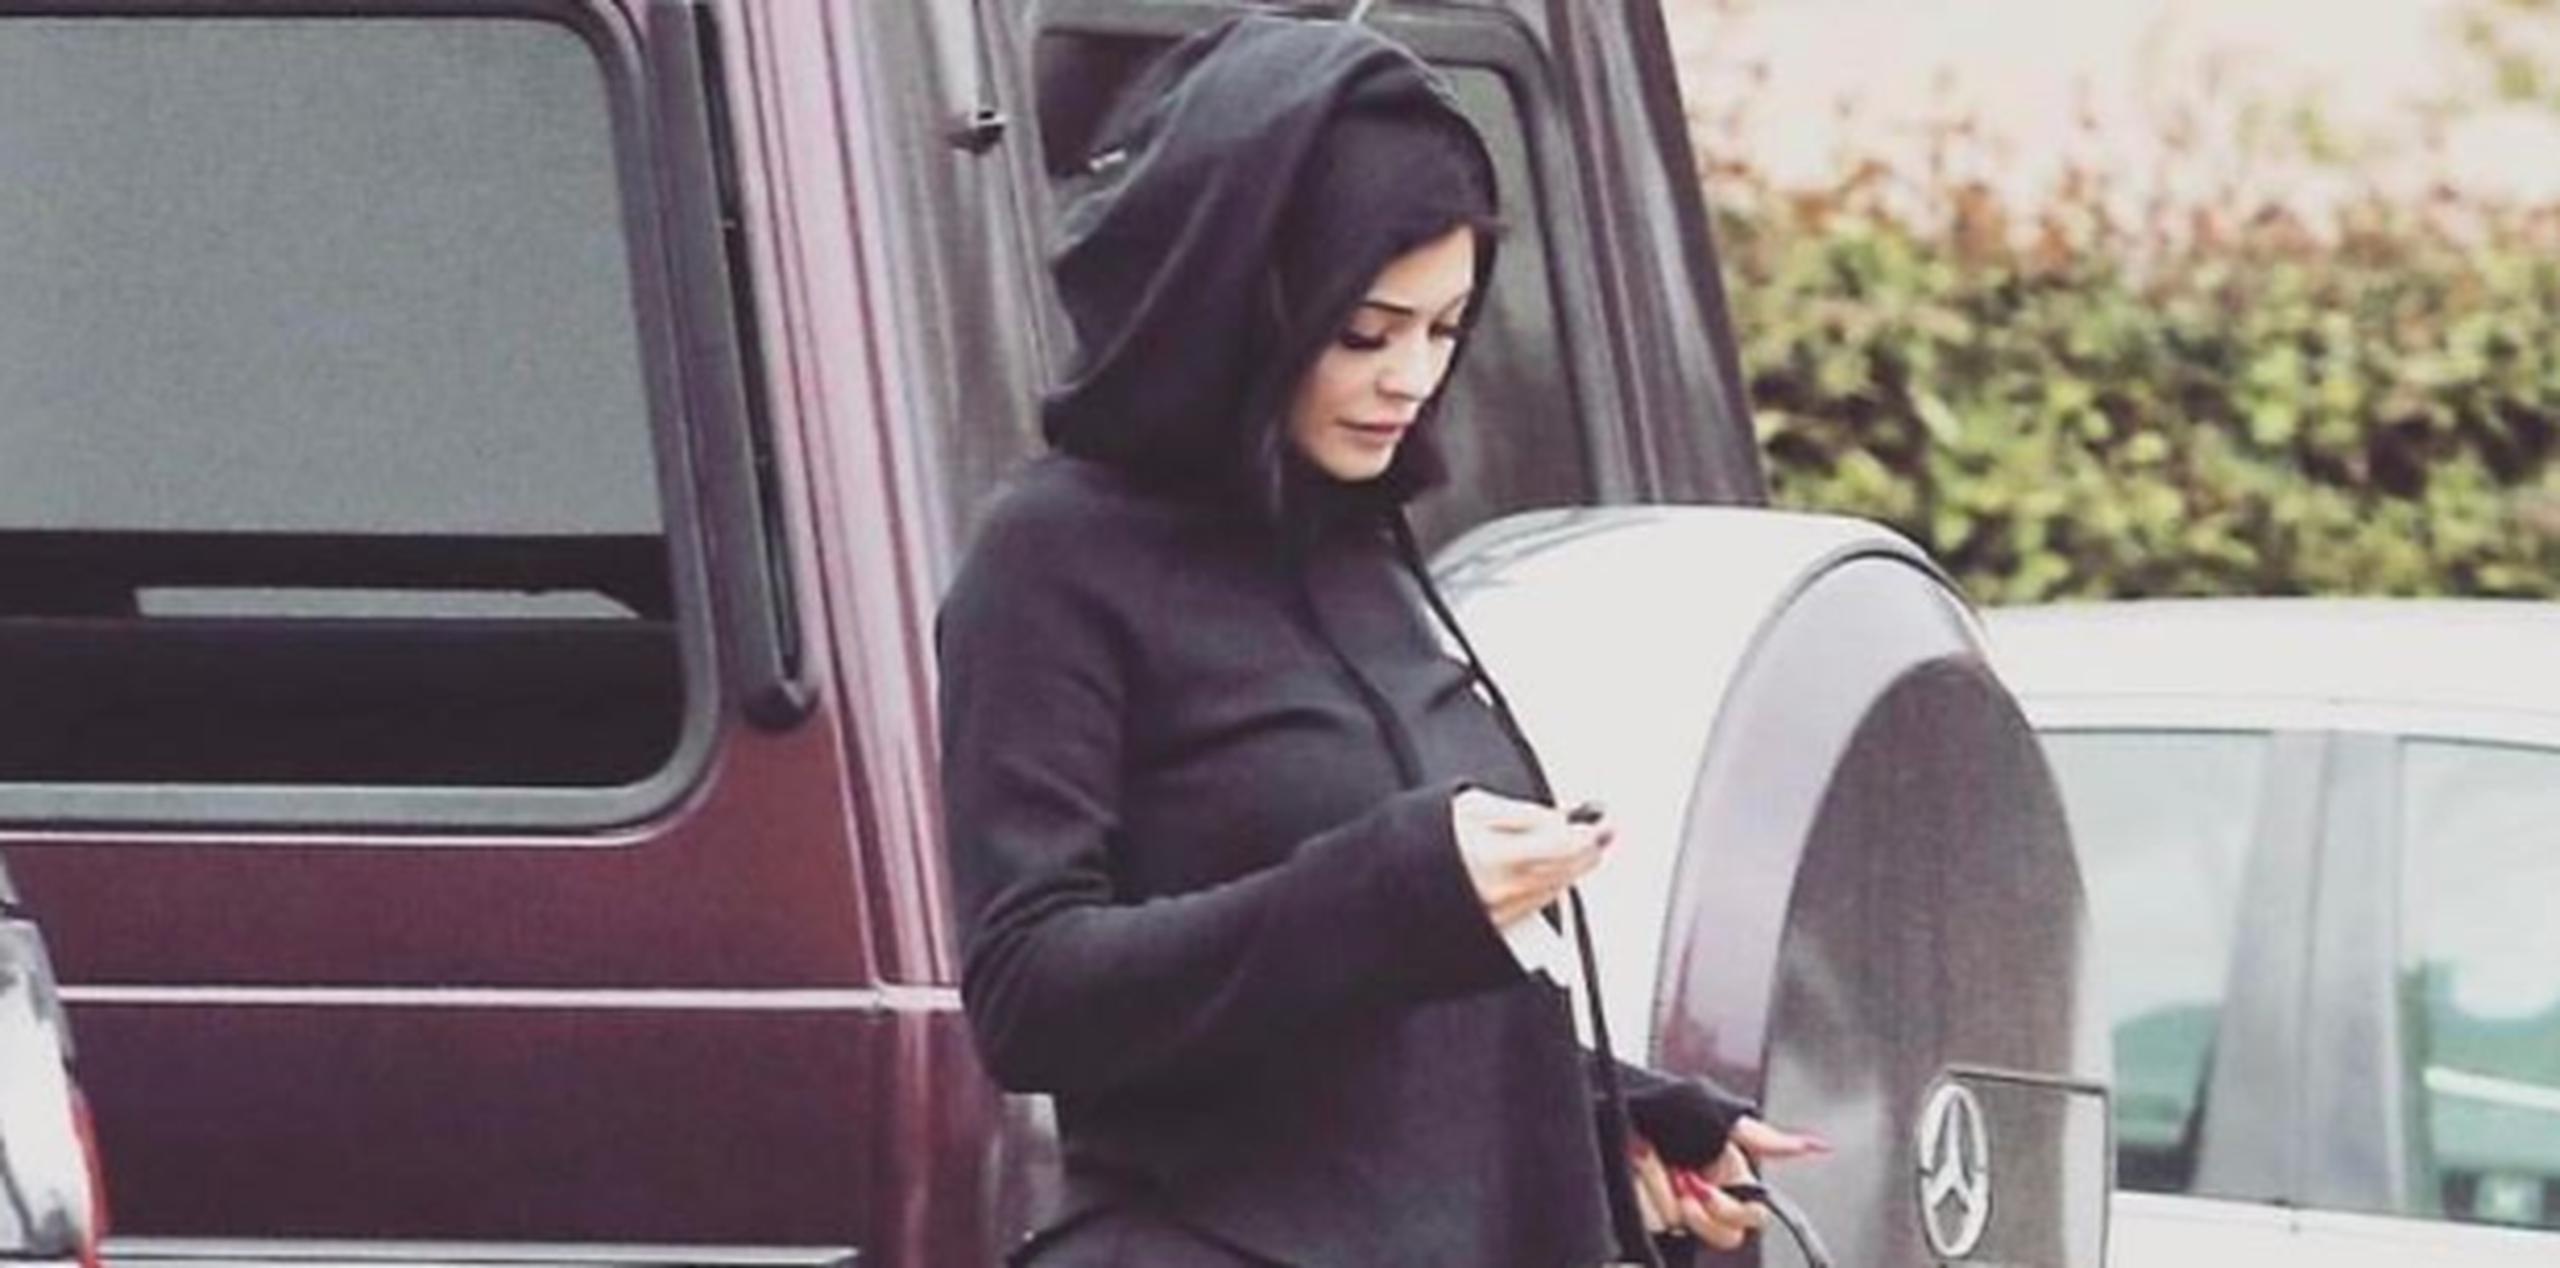 Kylie Jenner suele recurrir a la pose "downward gaze". (Instagram)

